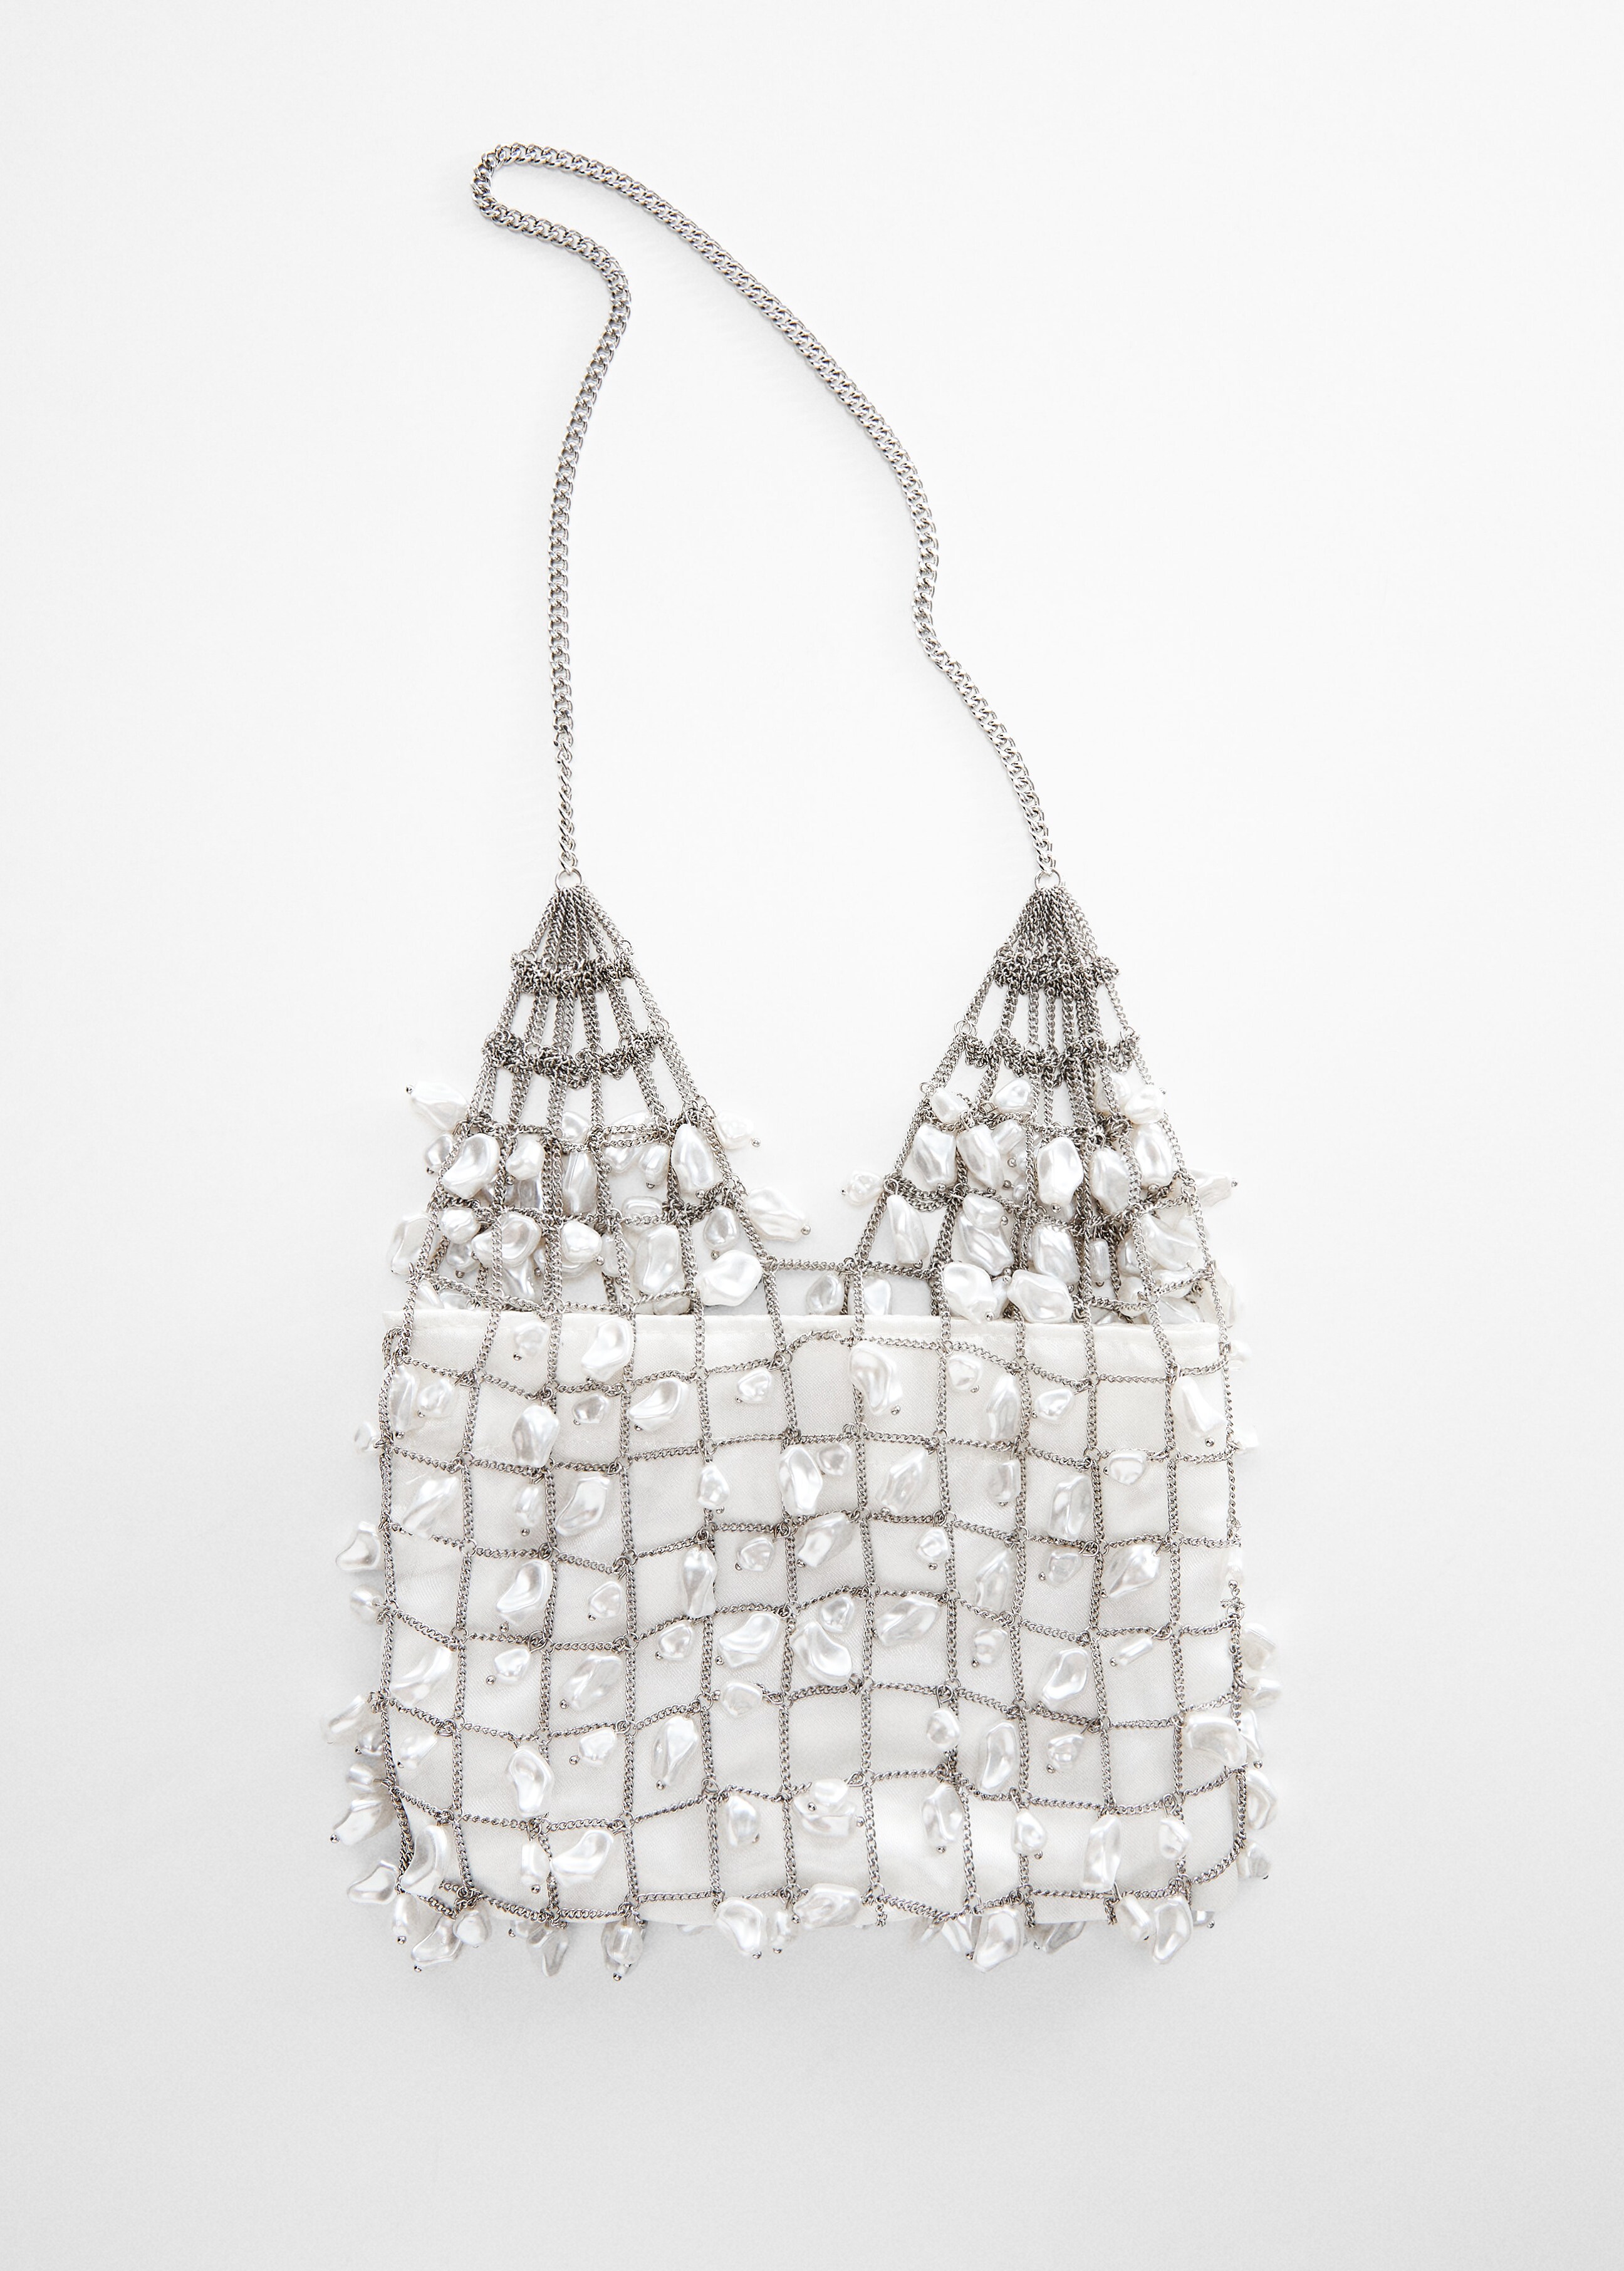 Metallic pearl mesh bag - Details of the article 5